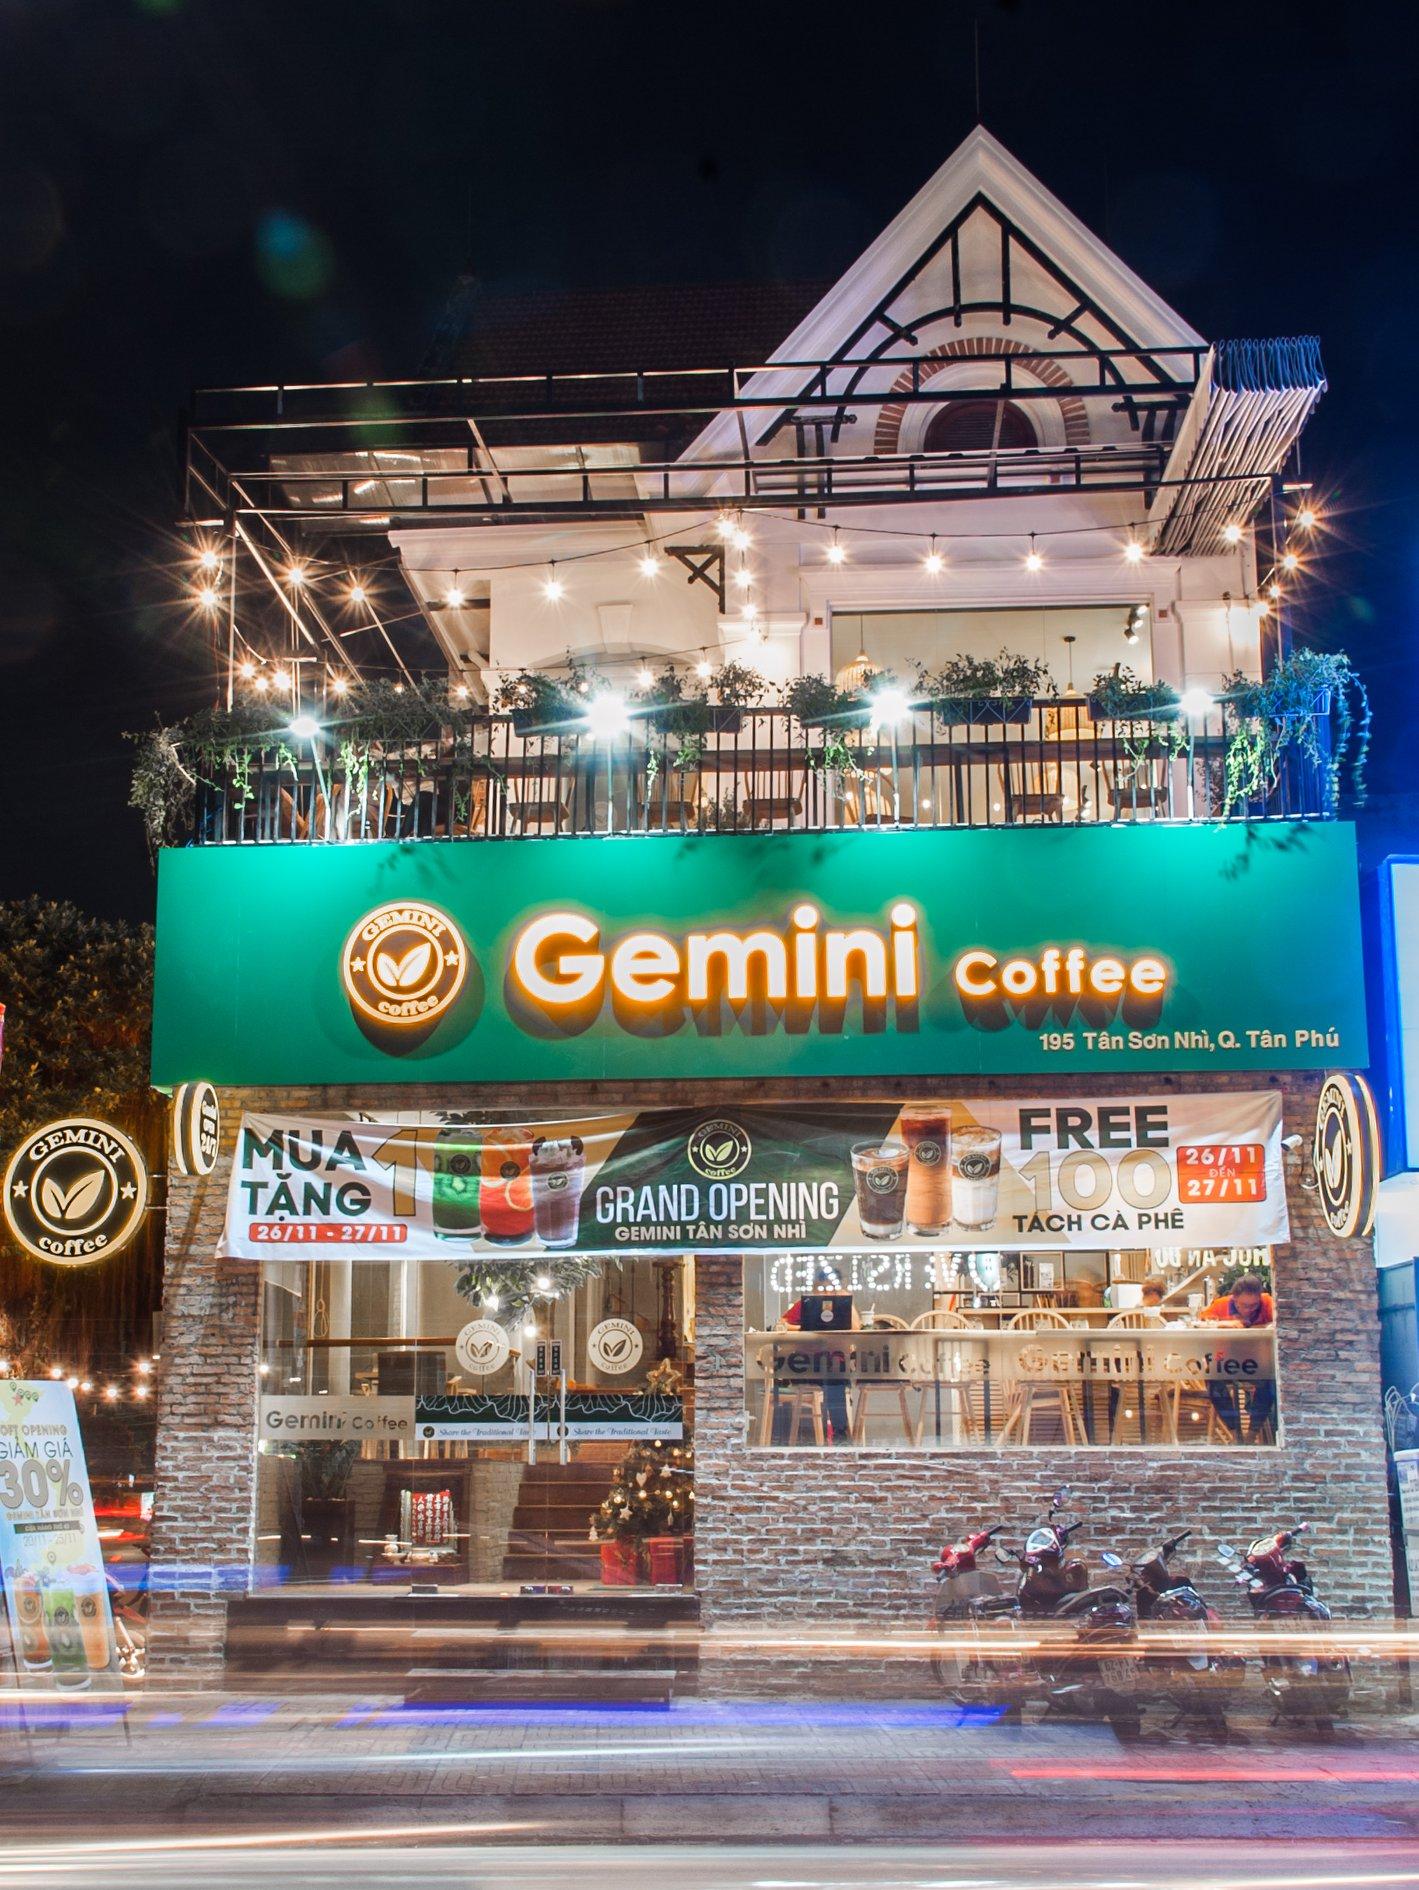 Tổng thể view ban đêm nổi bật của quán Gemini Coffe